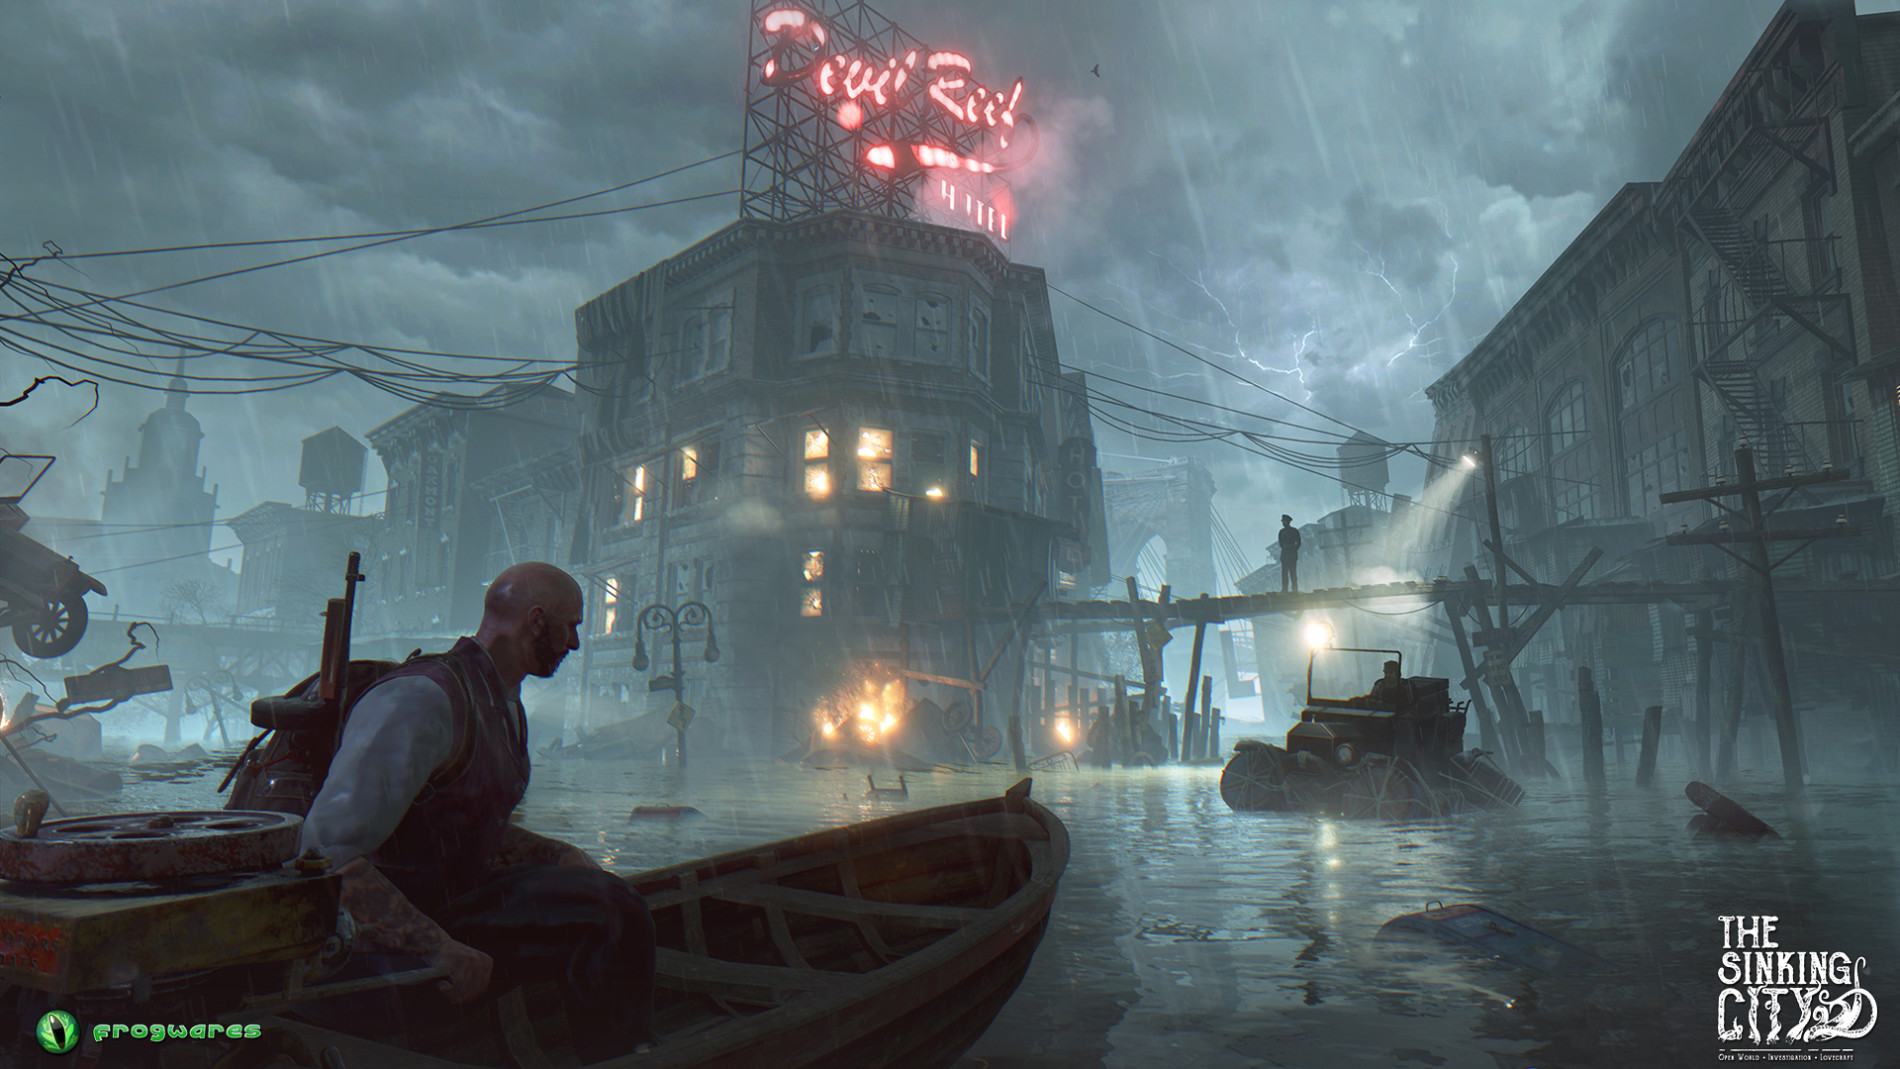 play3 Review: The Sinking City im Test: Mystery-Thriller für Lovecraft-Fans!?